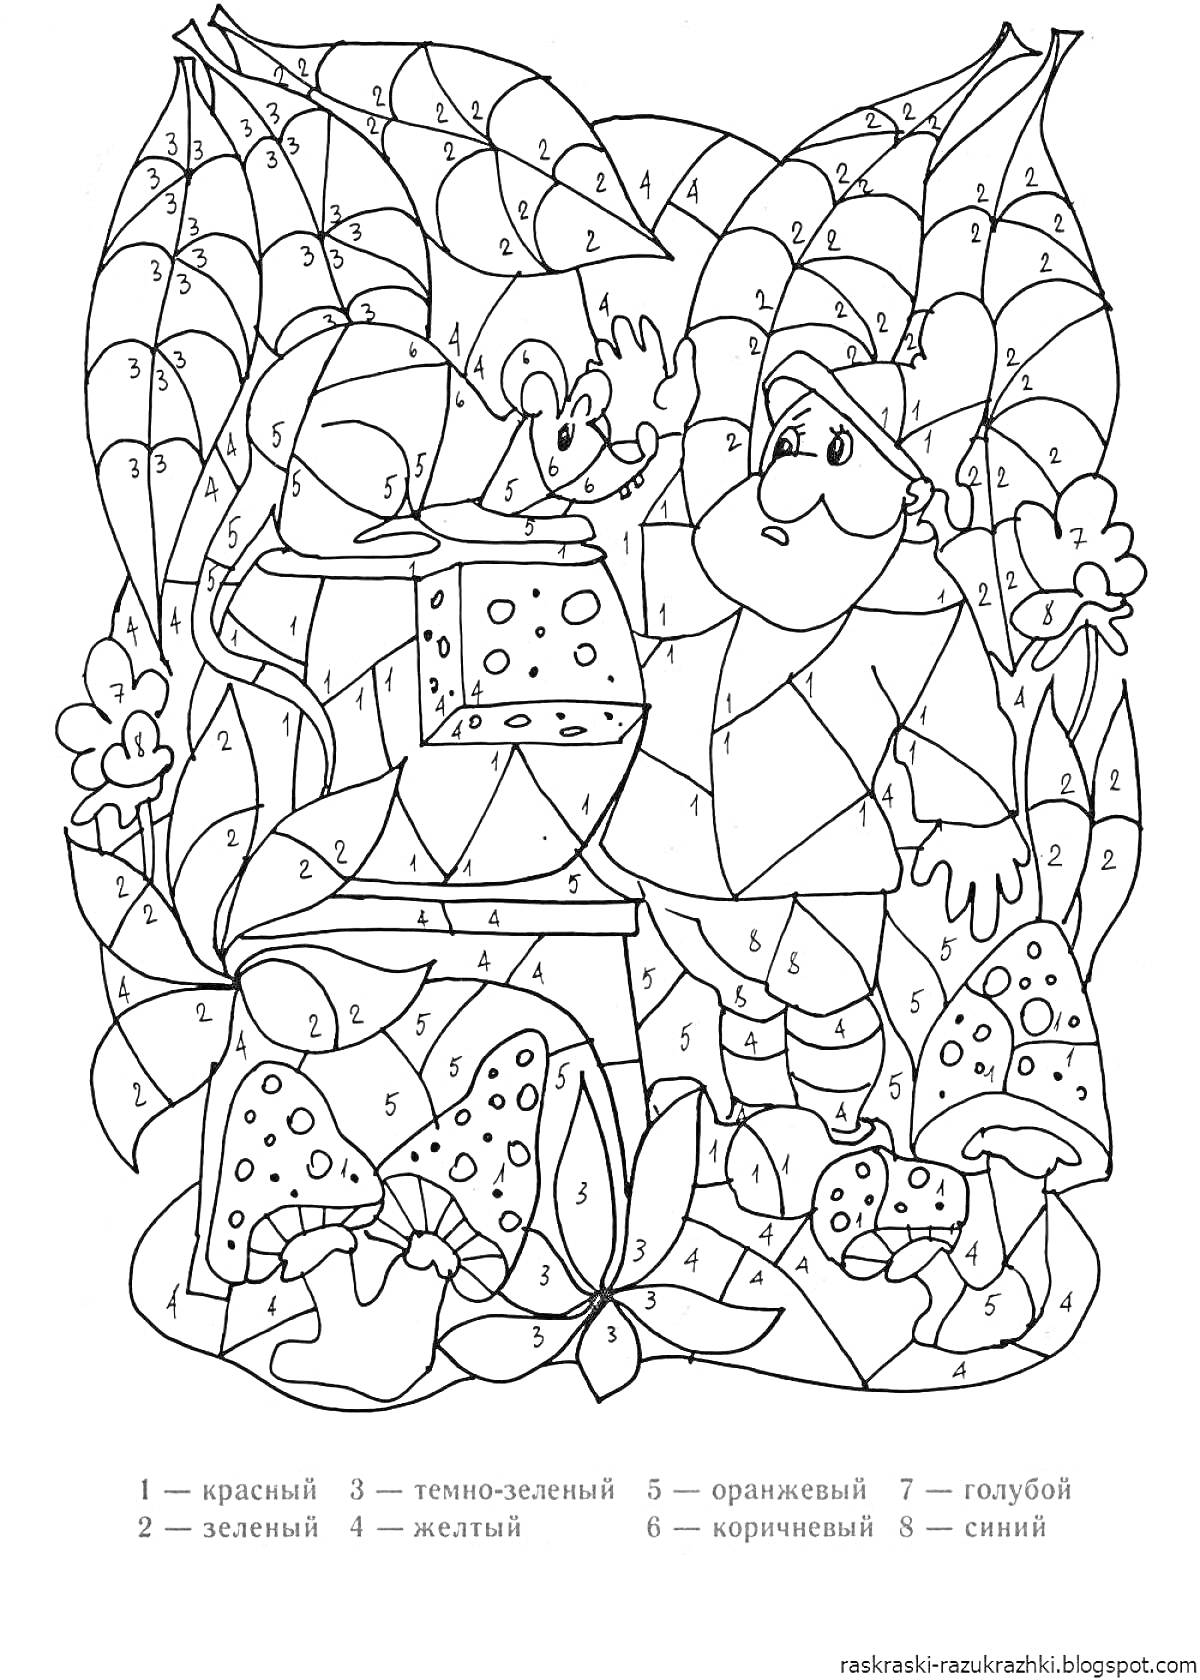 Раскраска Гномы и природа: гном с цветком и книга, паутина, листья, грибы